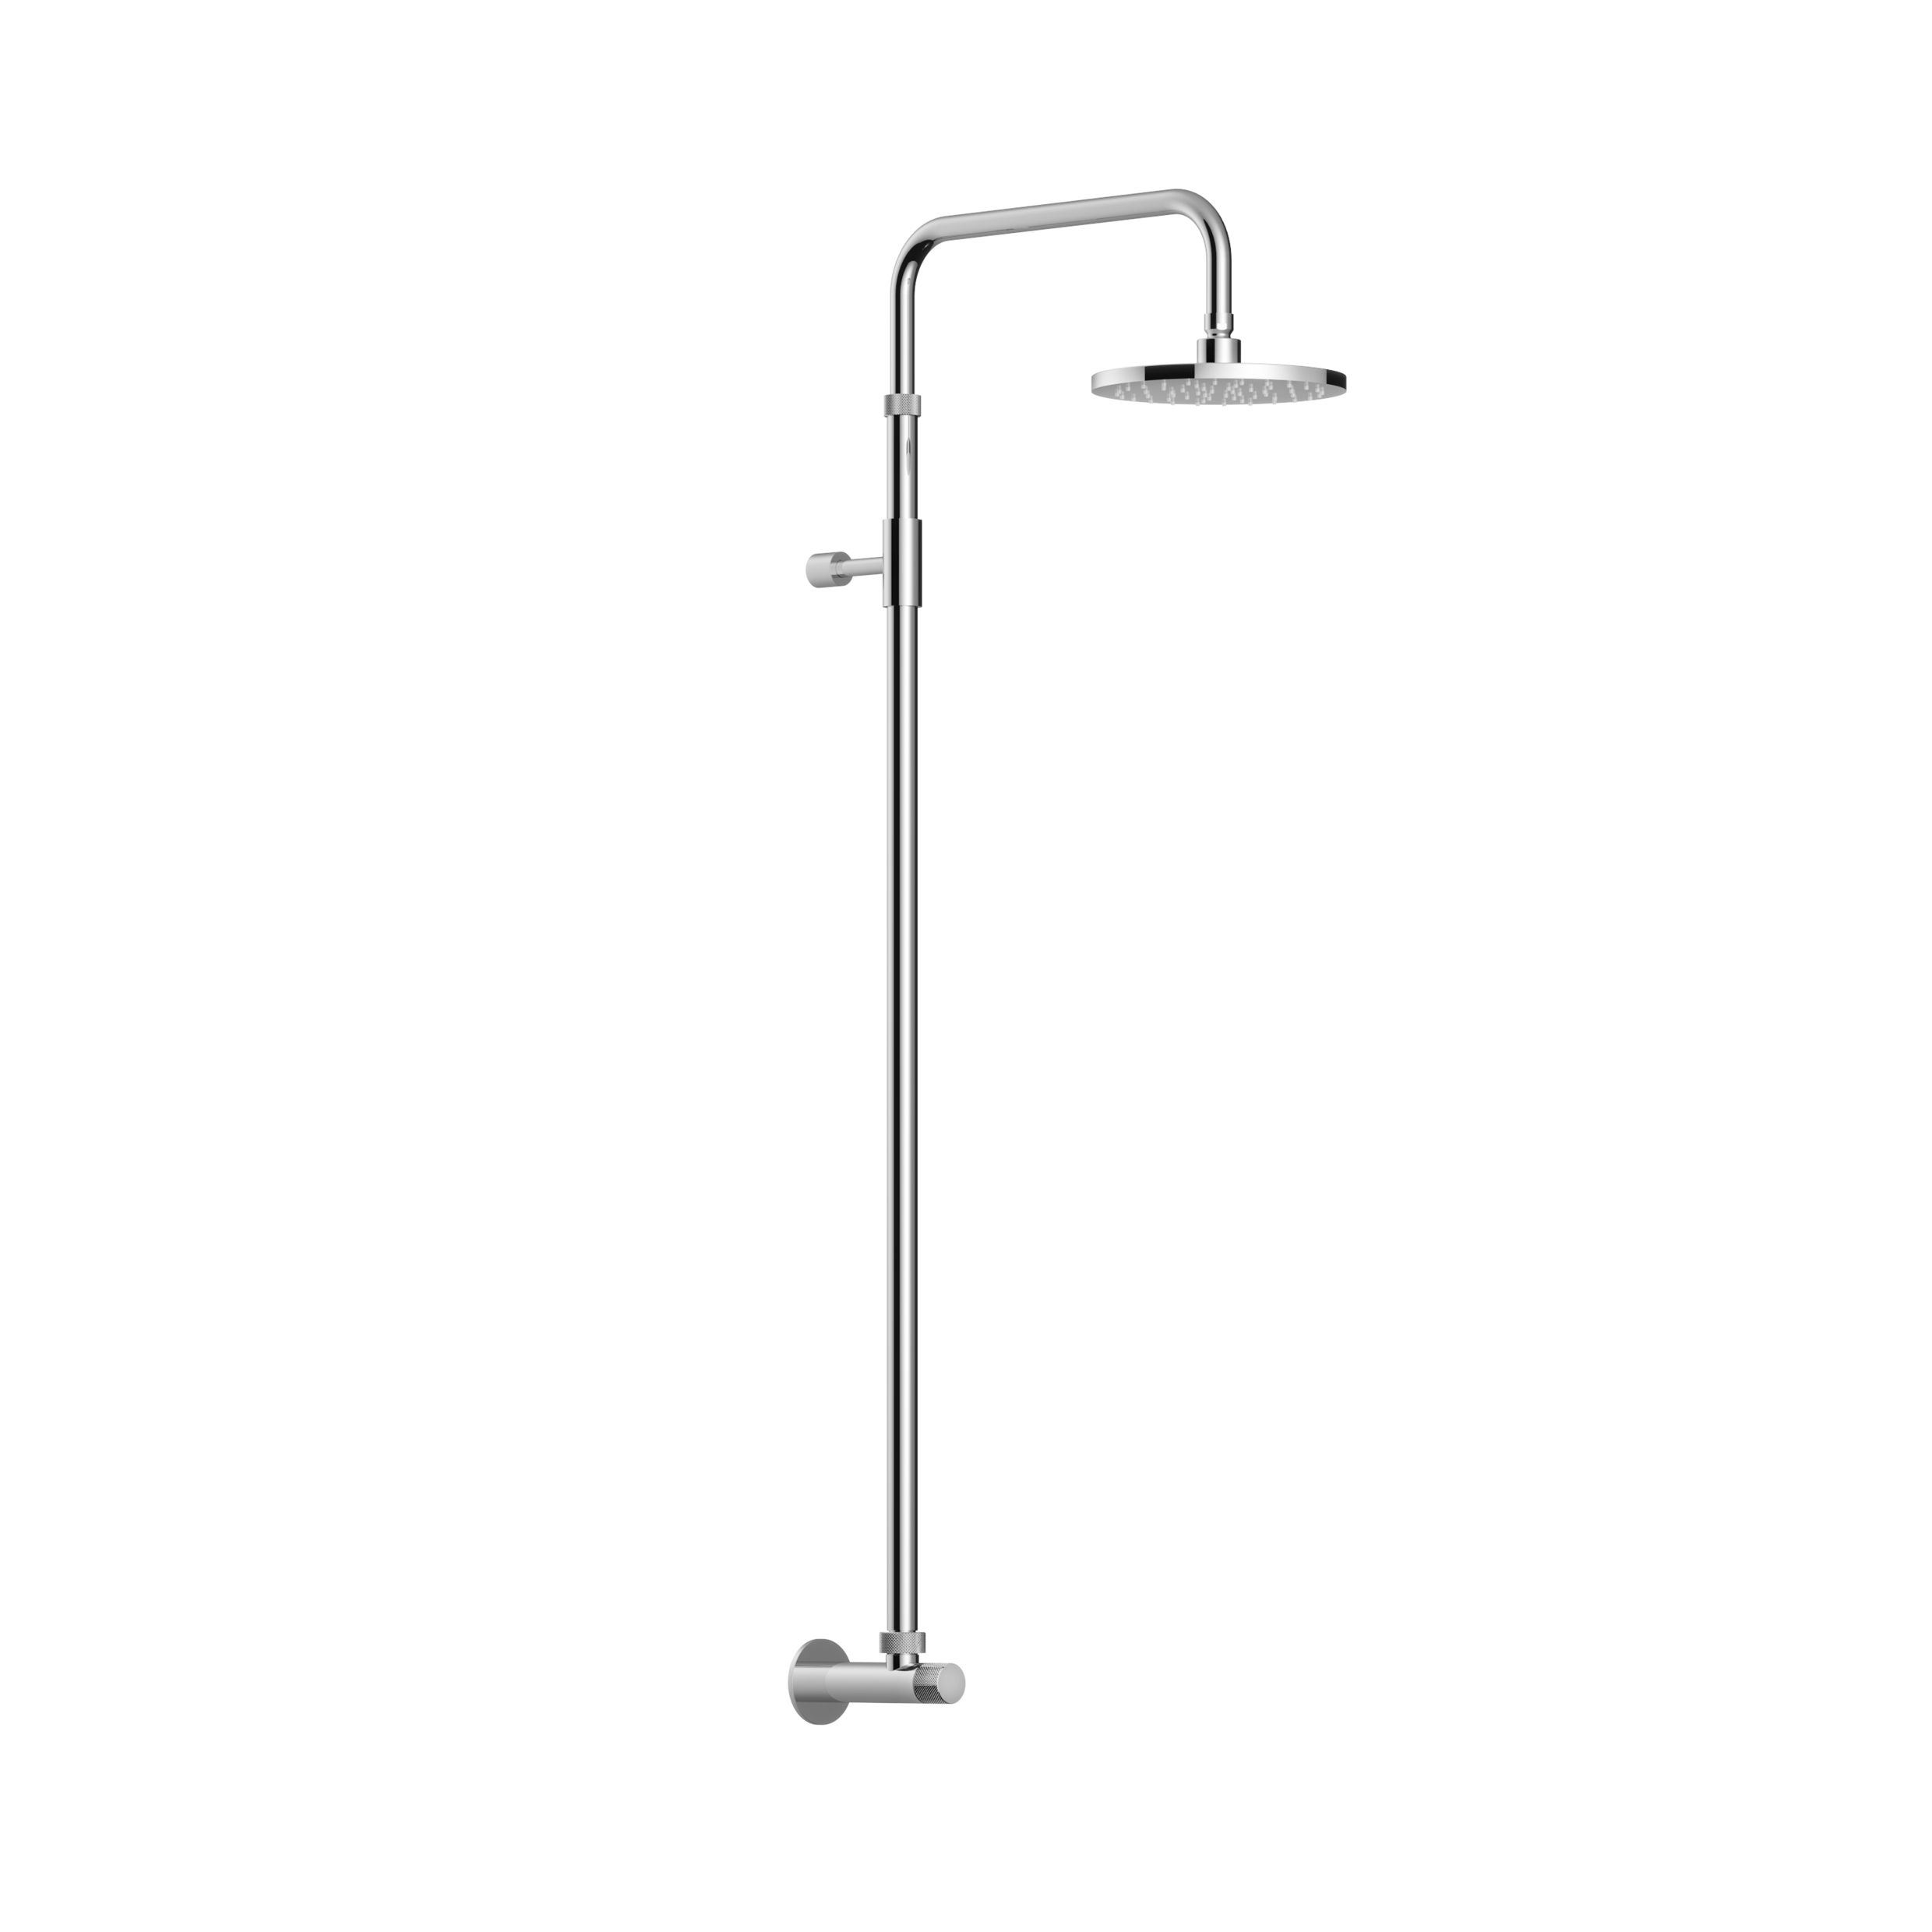 waterline-shower-wall-mounted-fontealta-wanddusche-mit-kaltwasserventil-akw52-mx